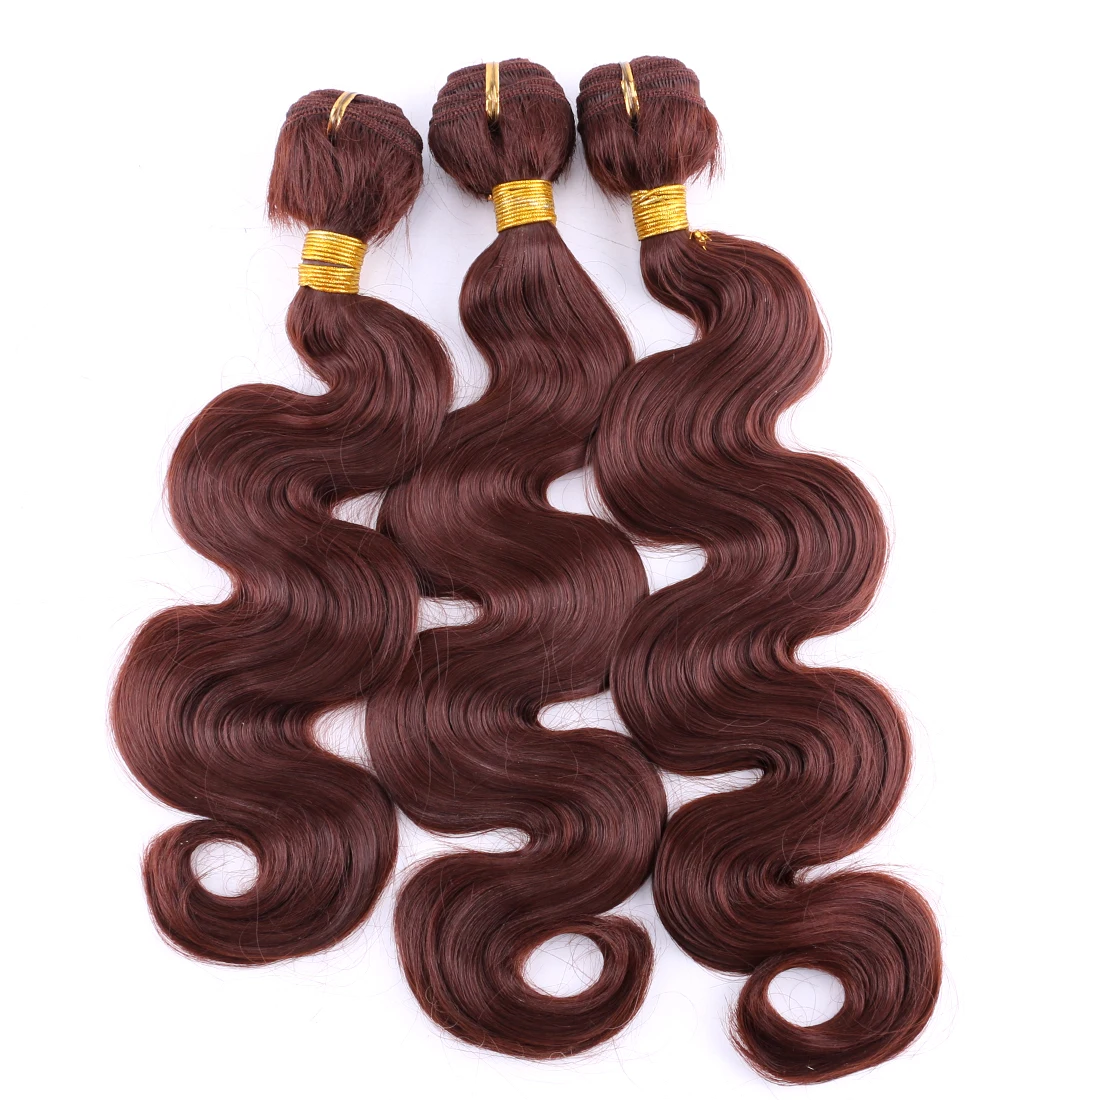 

Черно-коричневые волнистые пучки волос 14-24 дюйма, высокотемпературные синтетические волосы для наращивания, искусственные волосы 100 дюйма, ...